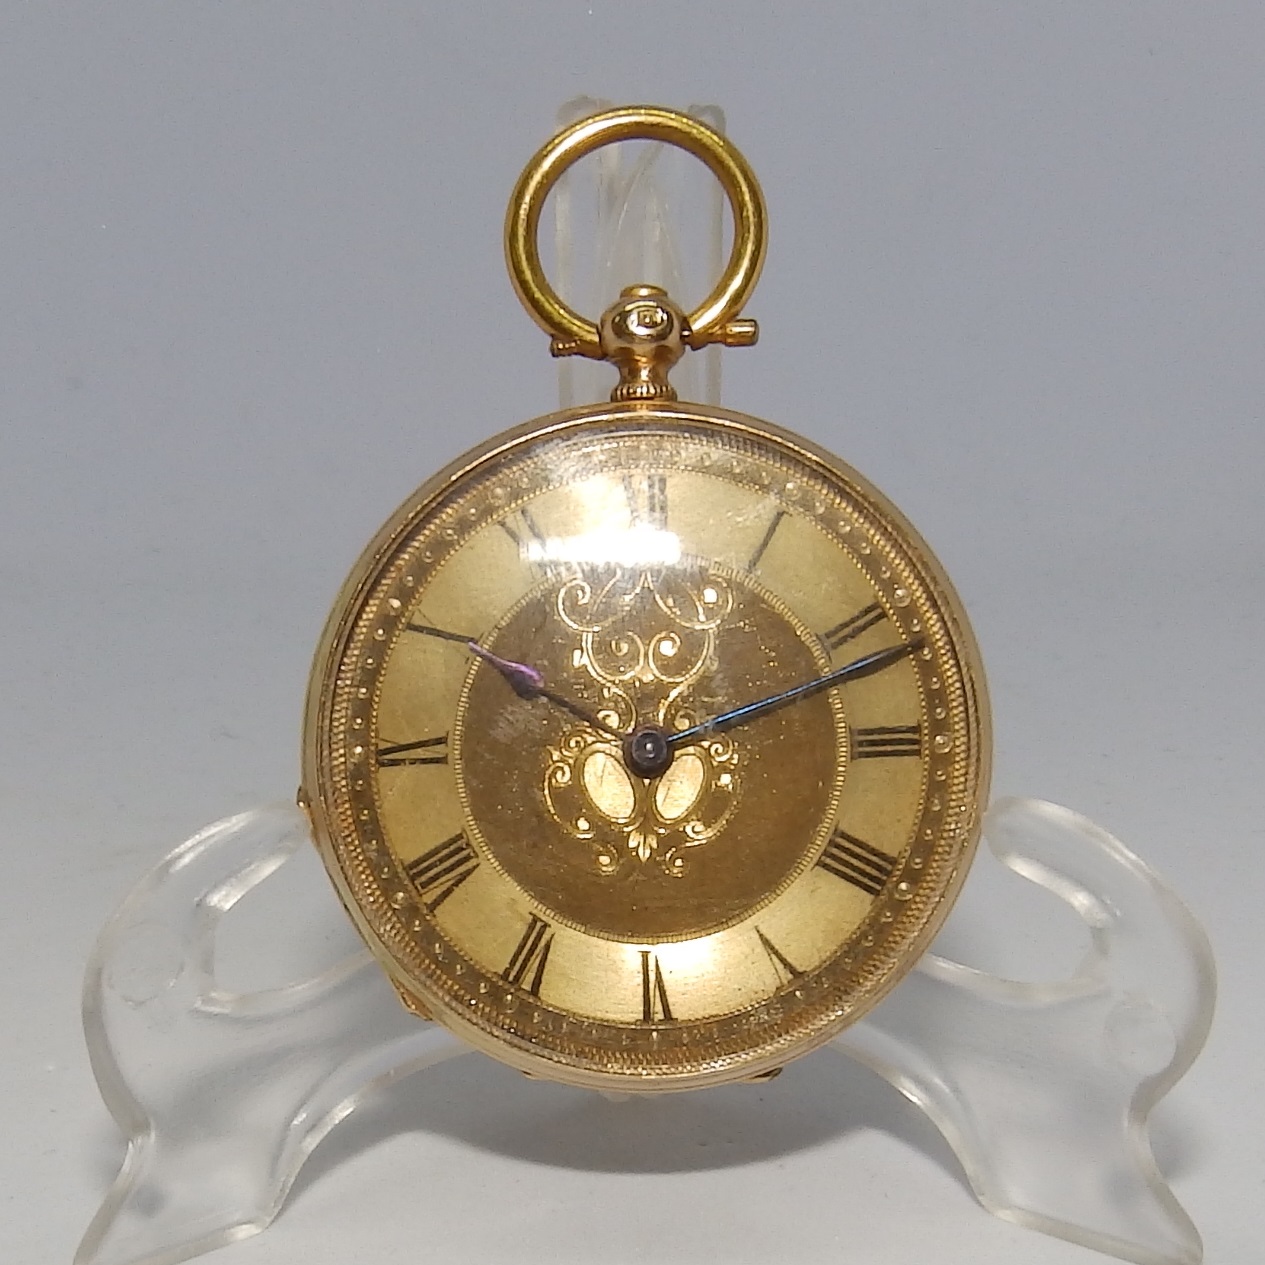 Reloj Suizo de Bolsillo para dama y caballero, lepine. Oro 14k. Ca. 1900.